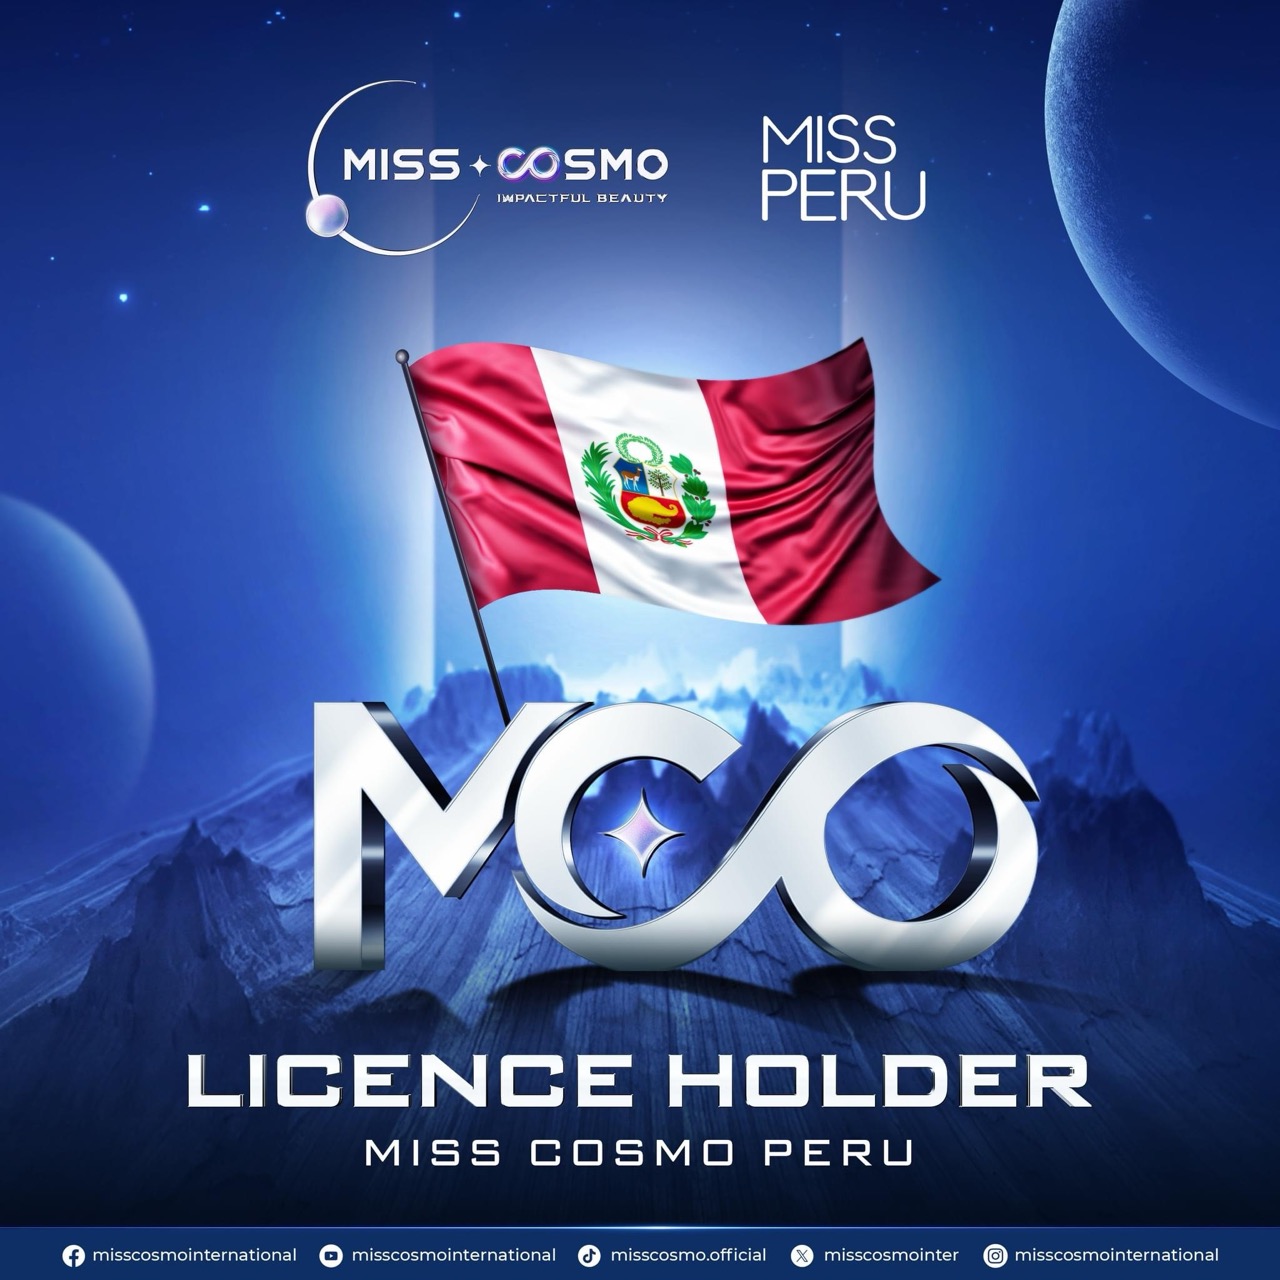 MISSCOSMO_PERU lớn